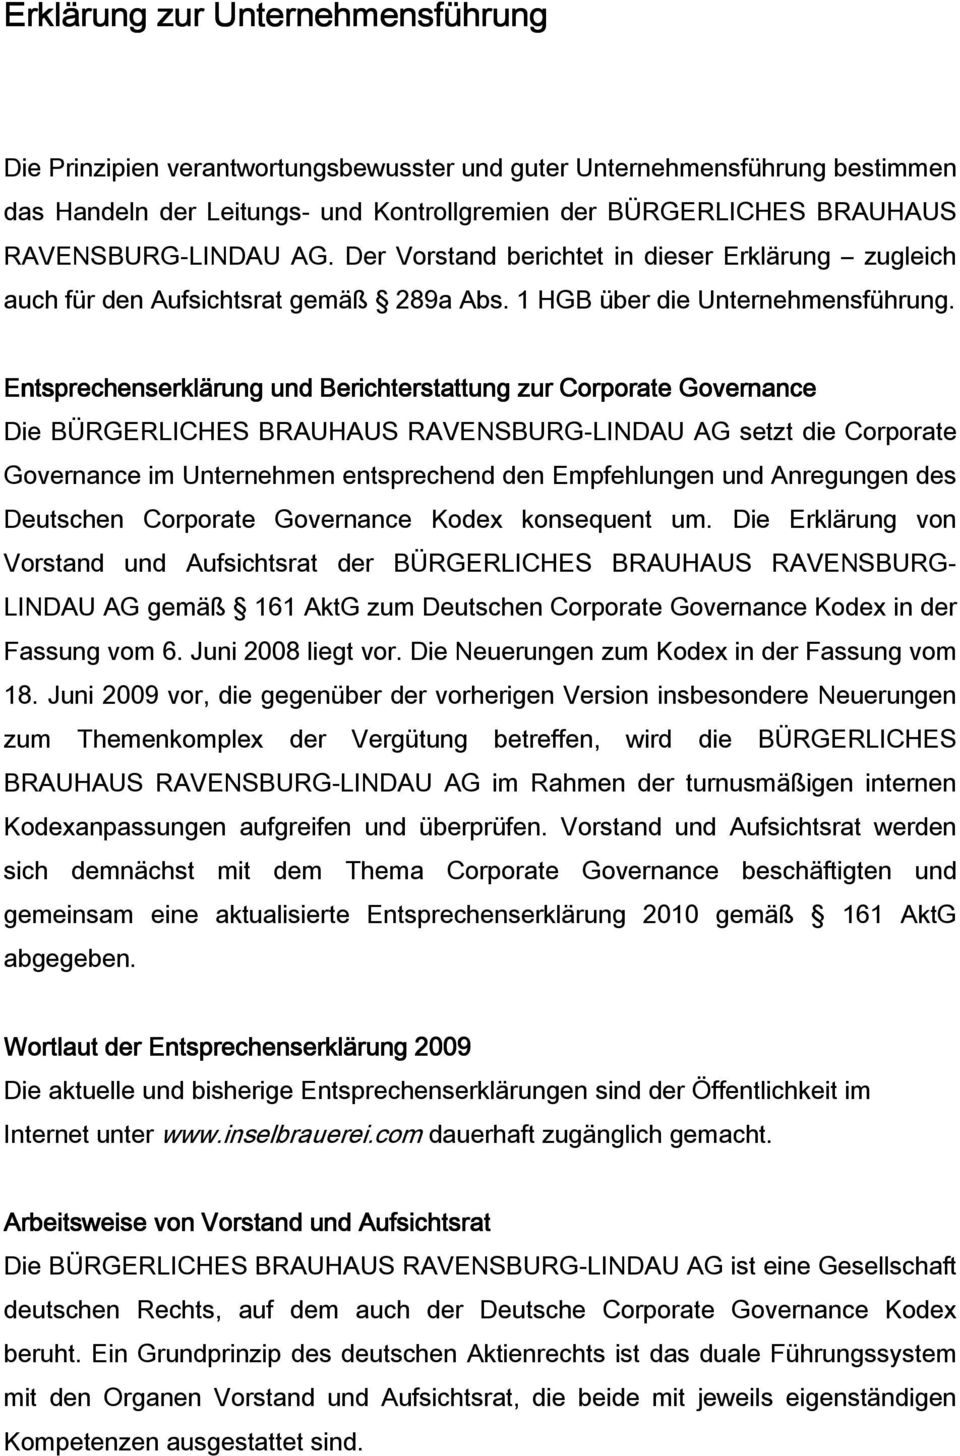 Entsprechenserklärung und Berichterstattung zur Corporate Governance Die BÜRGERLICHES BRAUHAUS RAVENSBURG-LINDAU AG setzt die Corporate Governance im Unternehmen entsprechend den Empfehlungen und